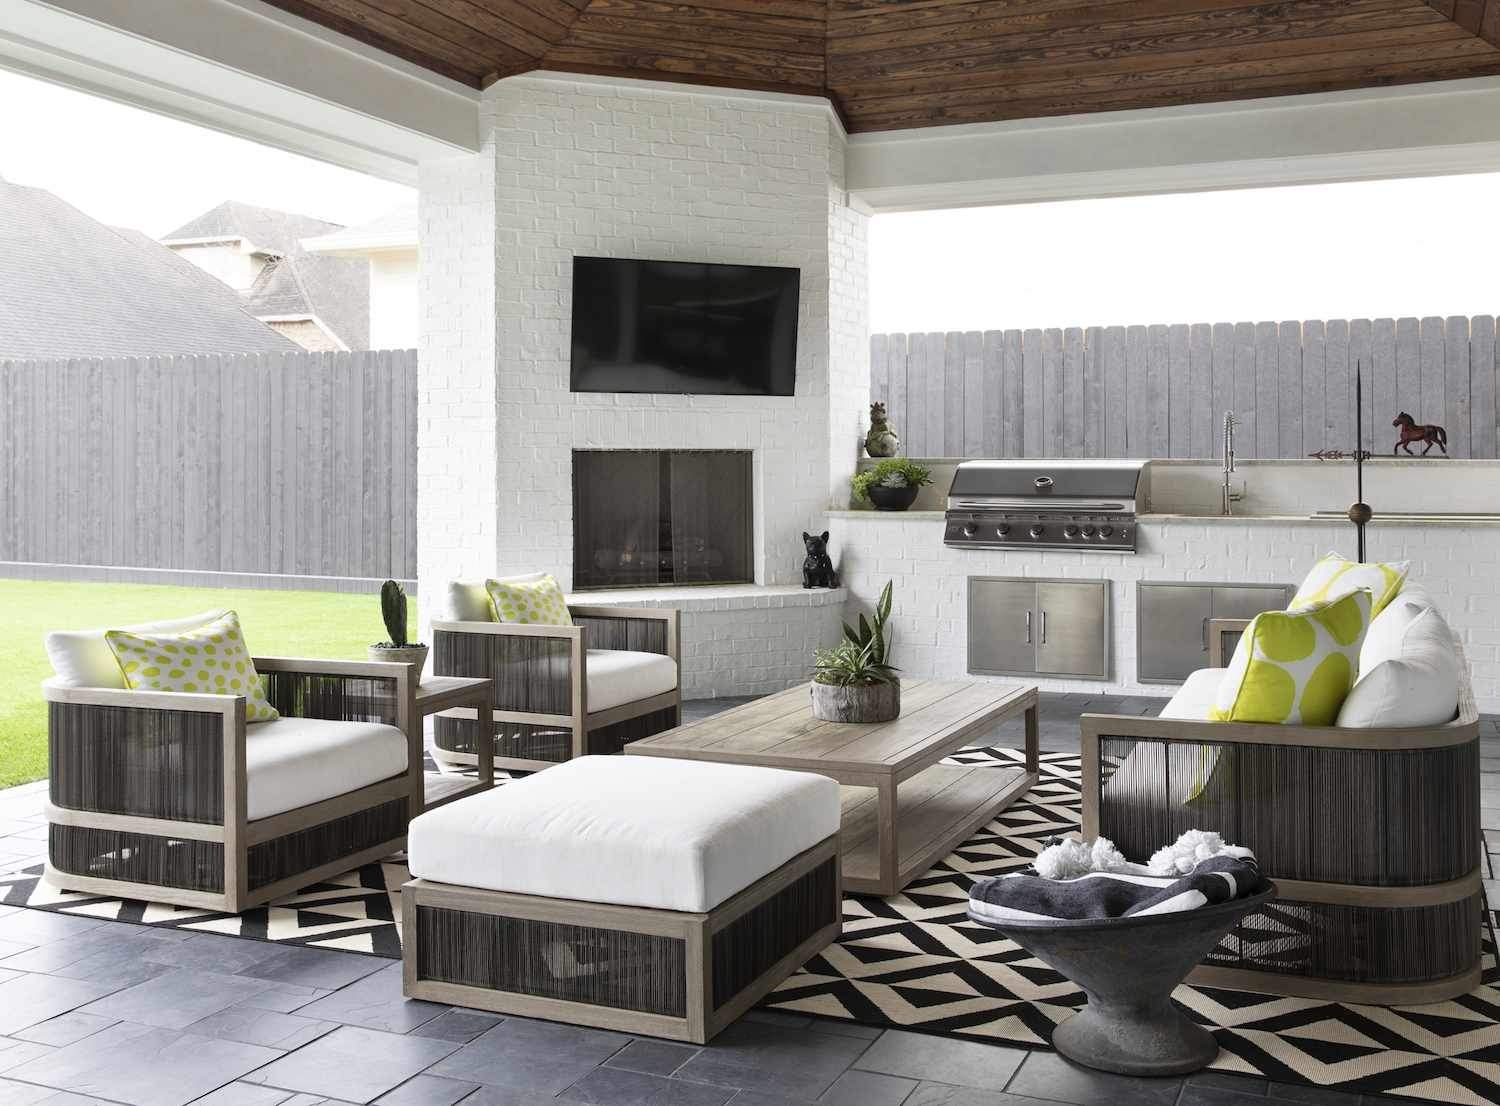 45 Outdoor Living Room Ideas For Al Fresco Entertaining with regard to Outdoor Living Room Ideas